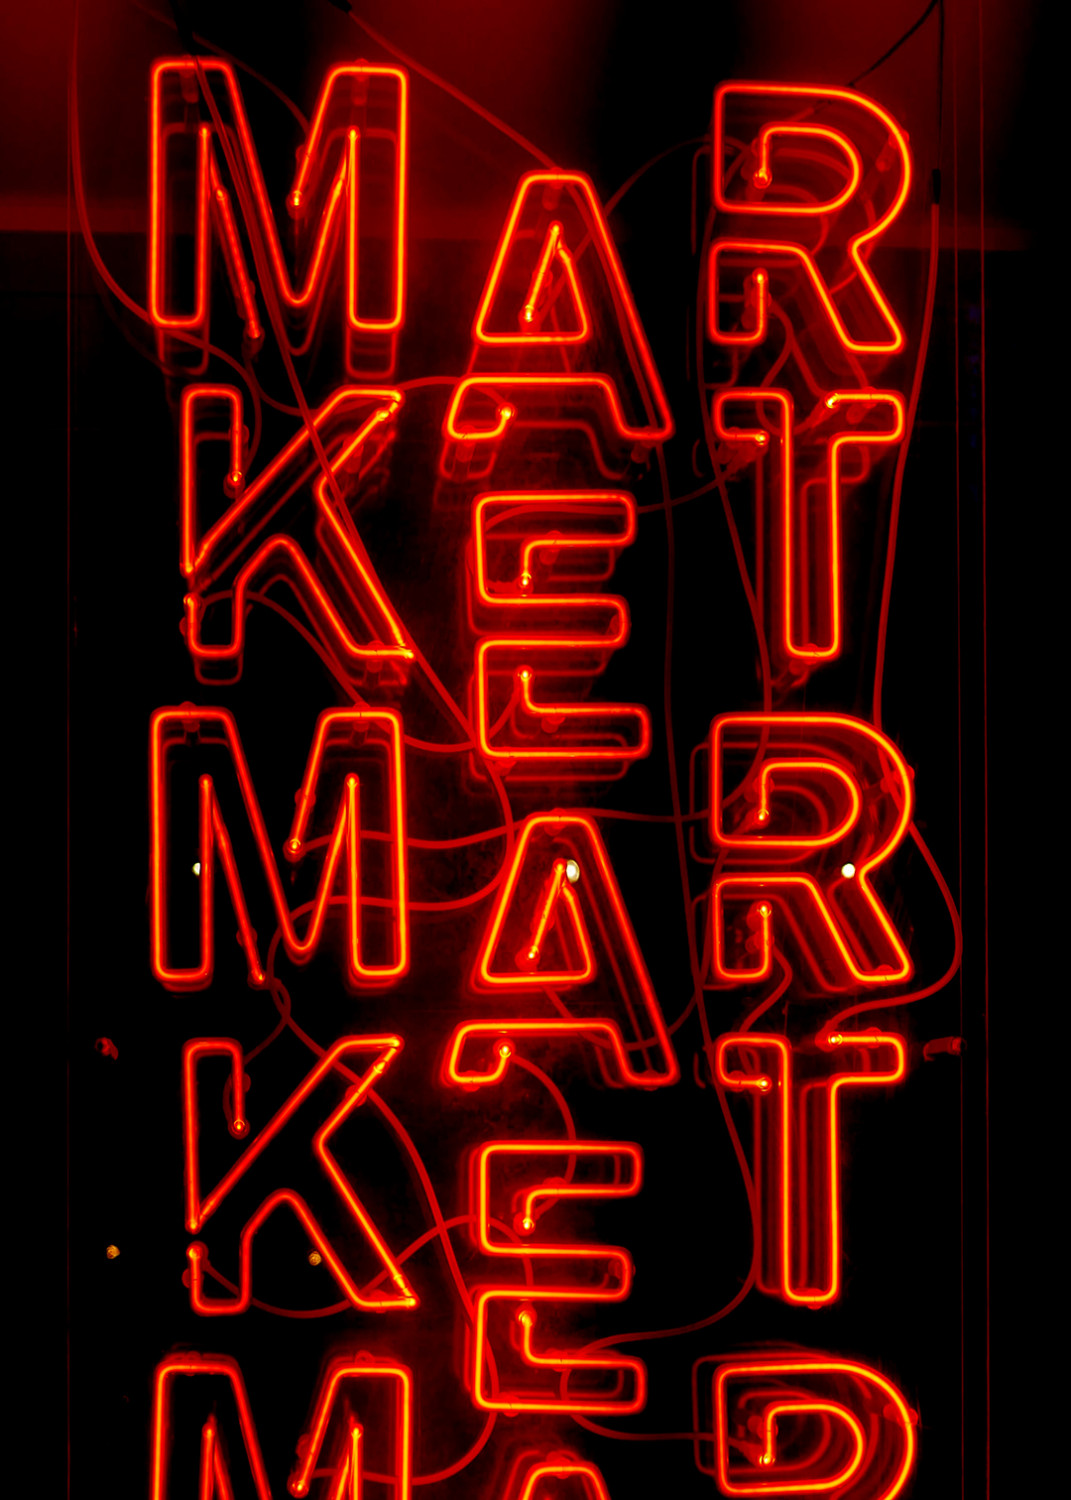 Image - narrow- market